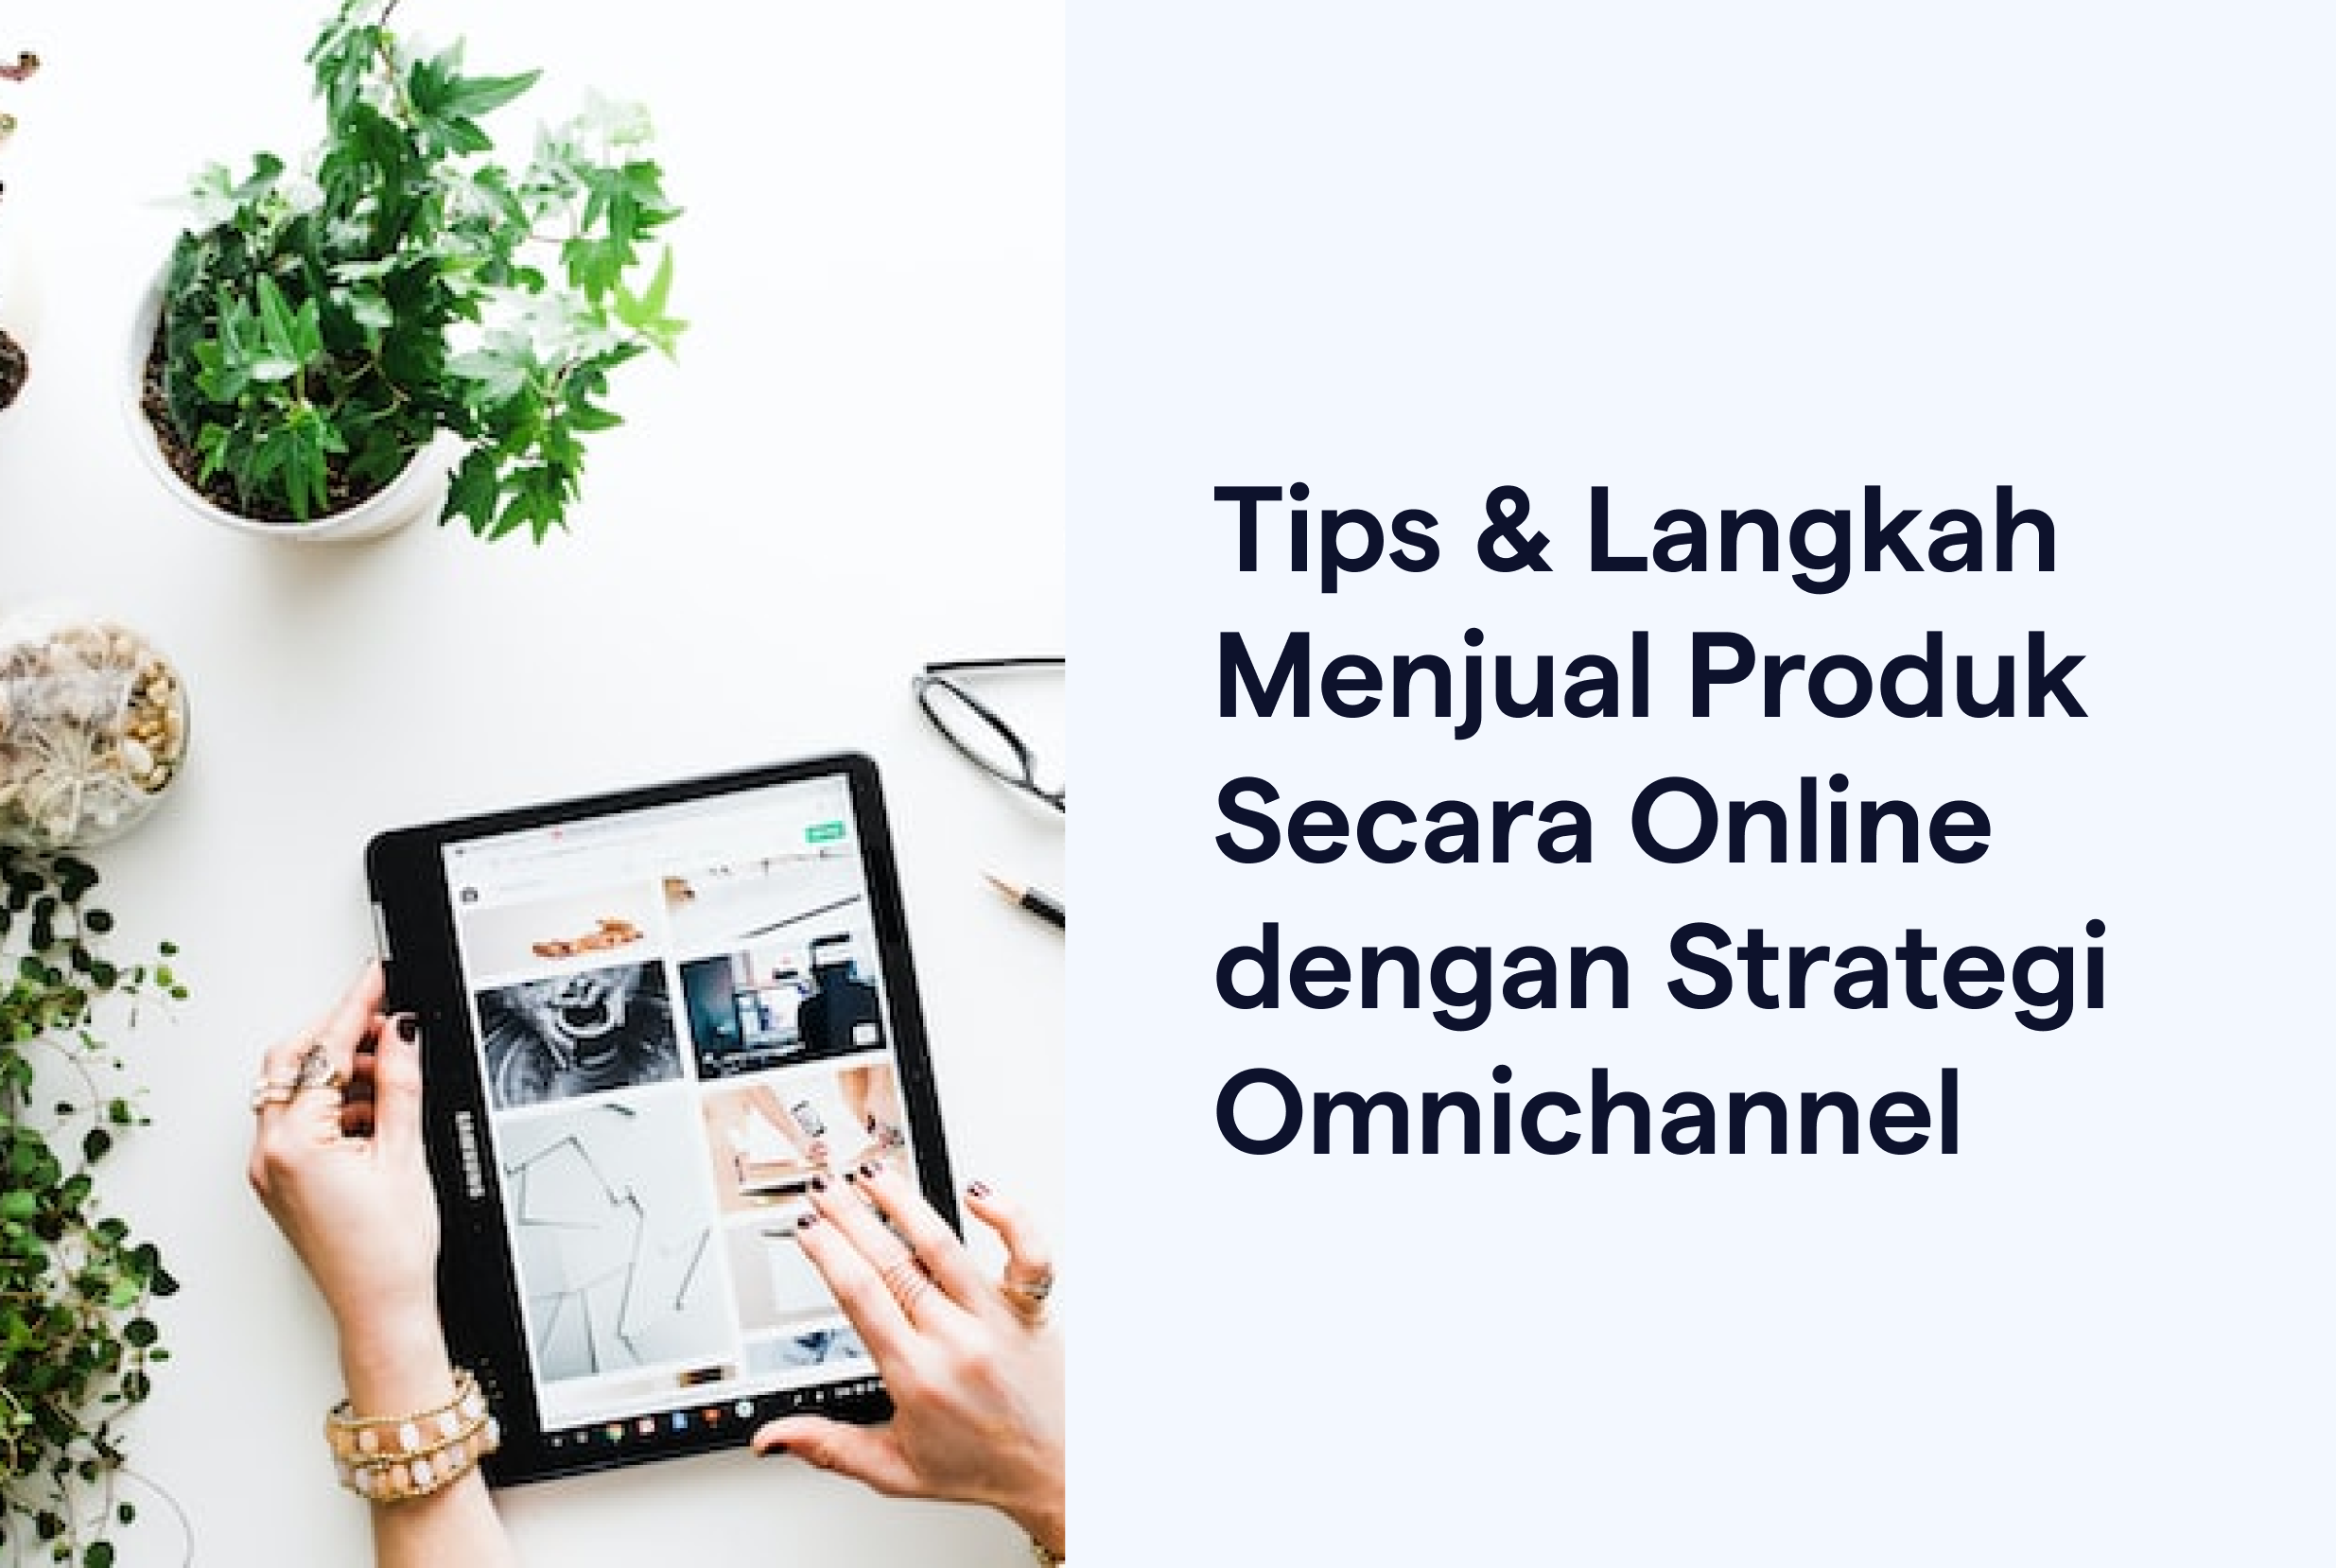 Tips & Langkah Menjual Produk Secara Online dengan Strategi Omnichannel